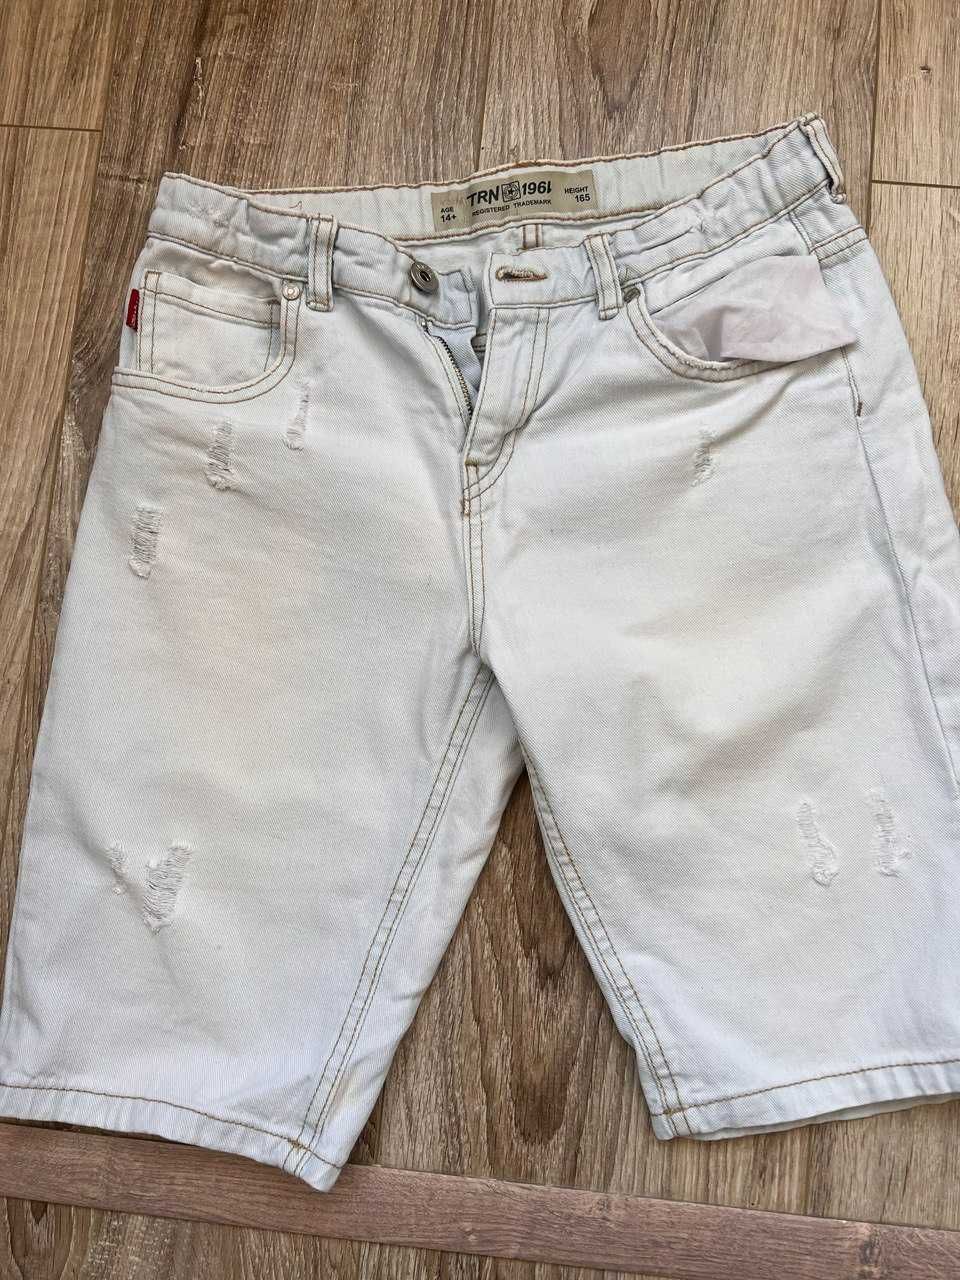 Продам в идеальном состоянии джинсовые шорты на рост 164.